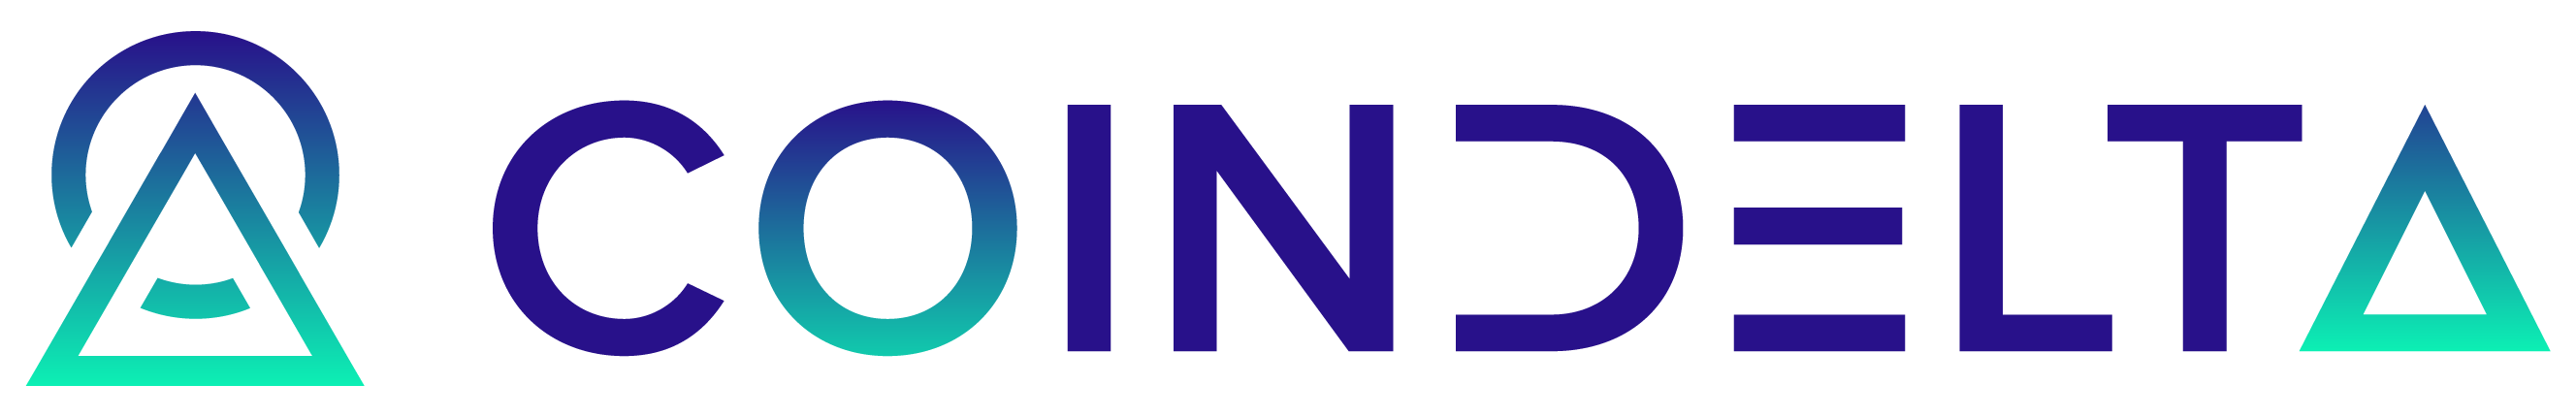 coindelta-logo